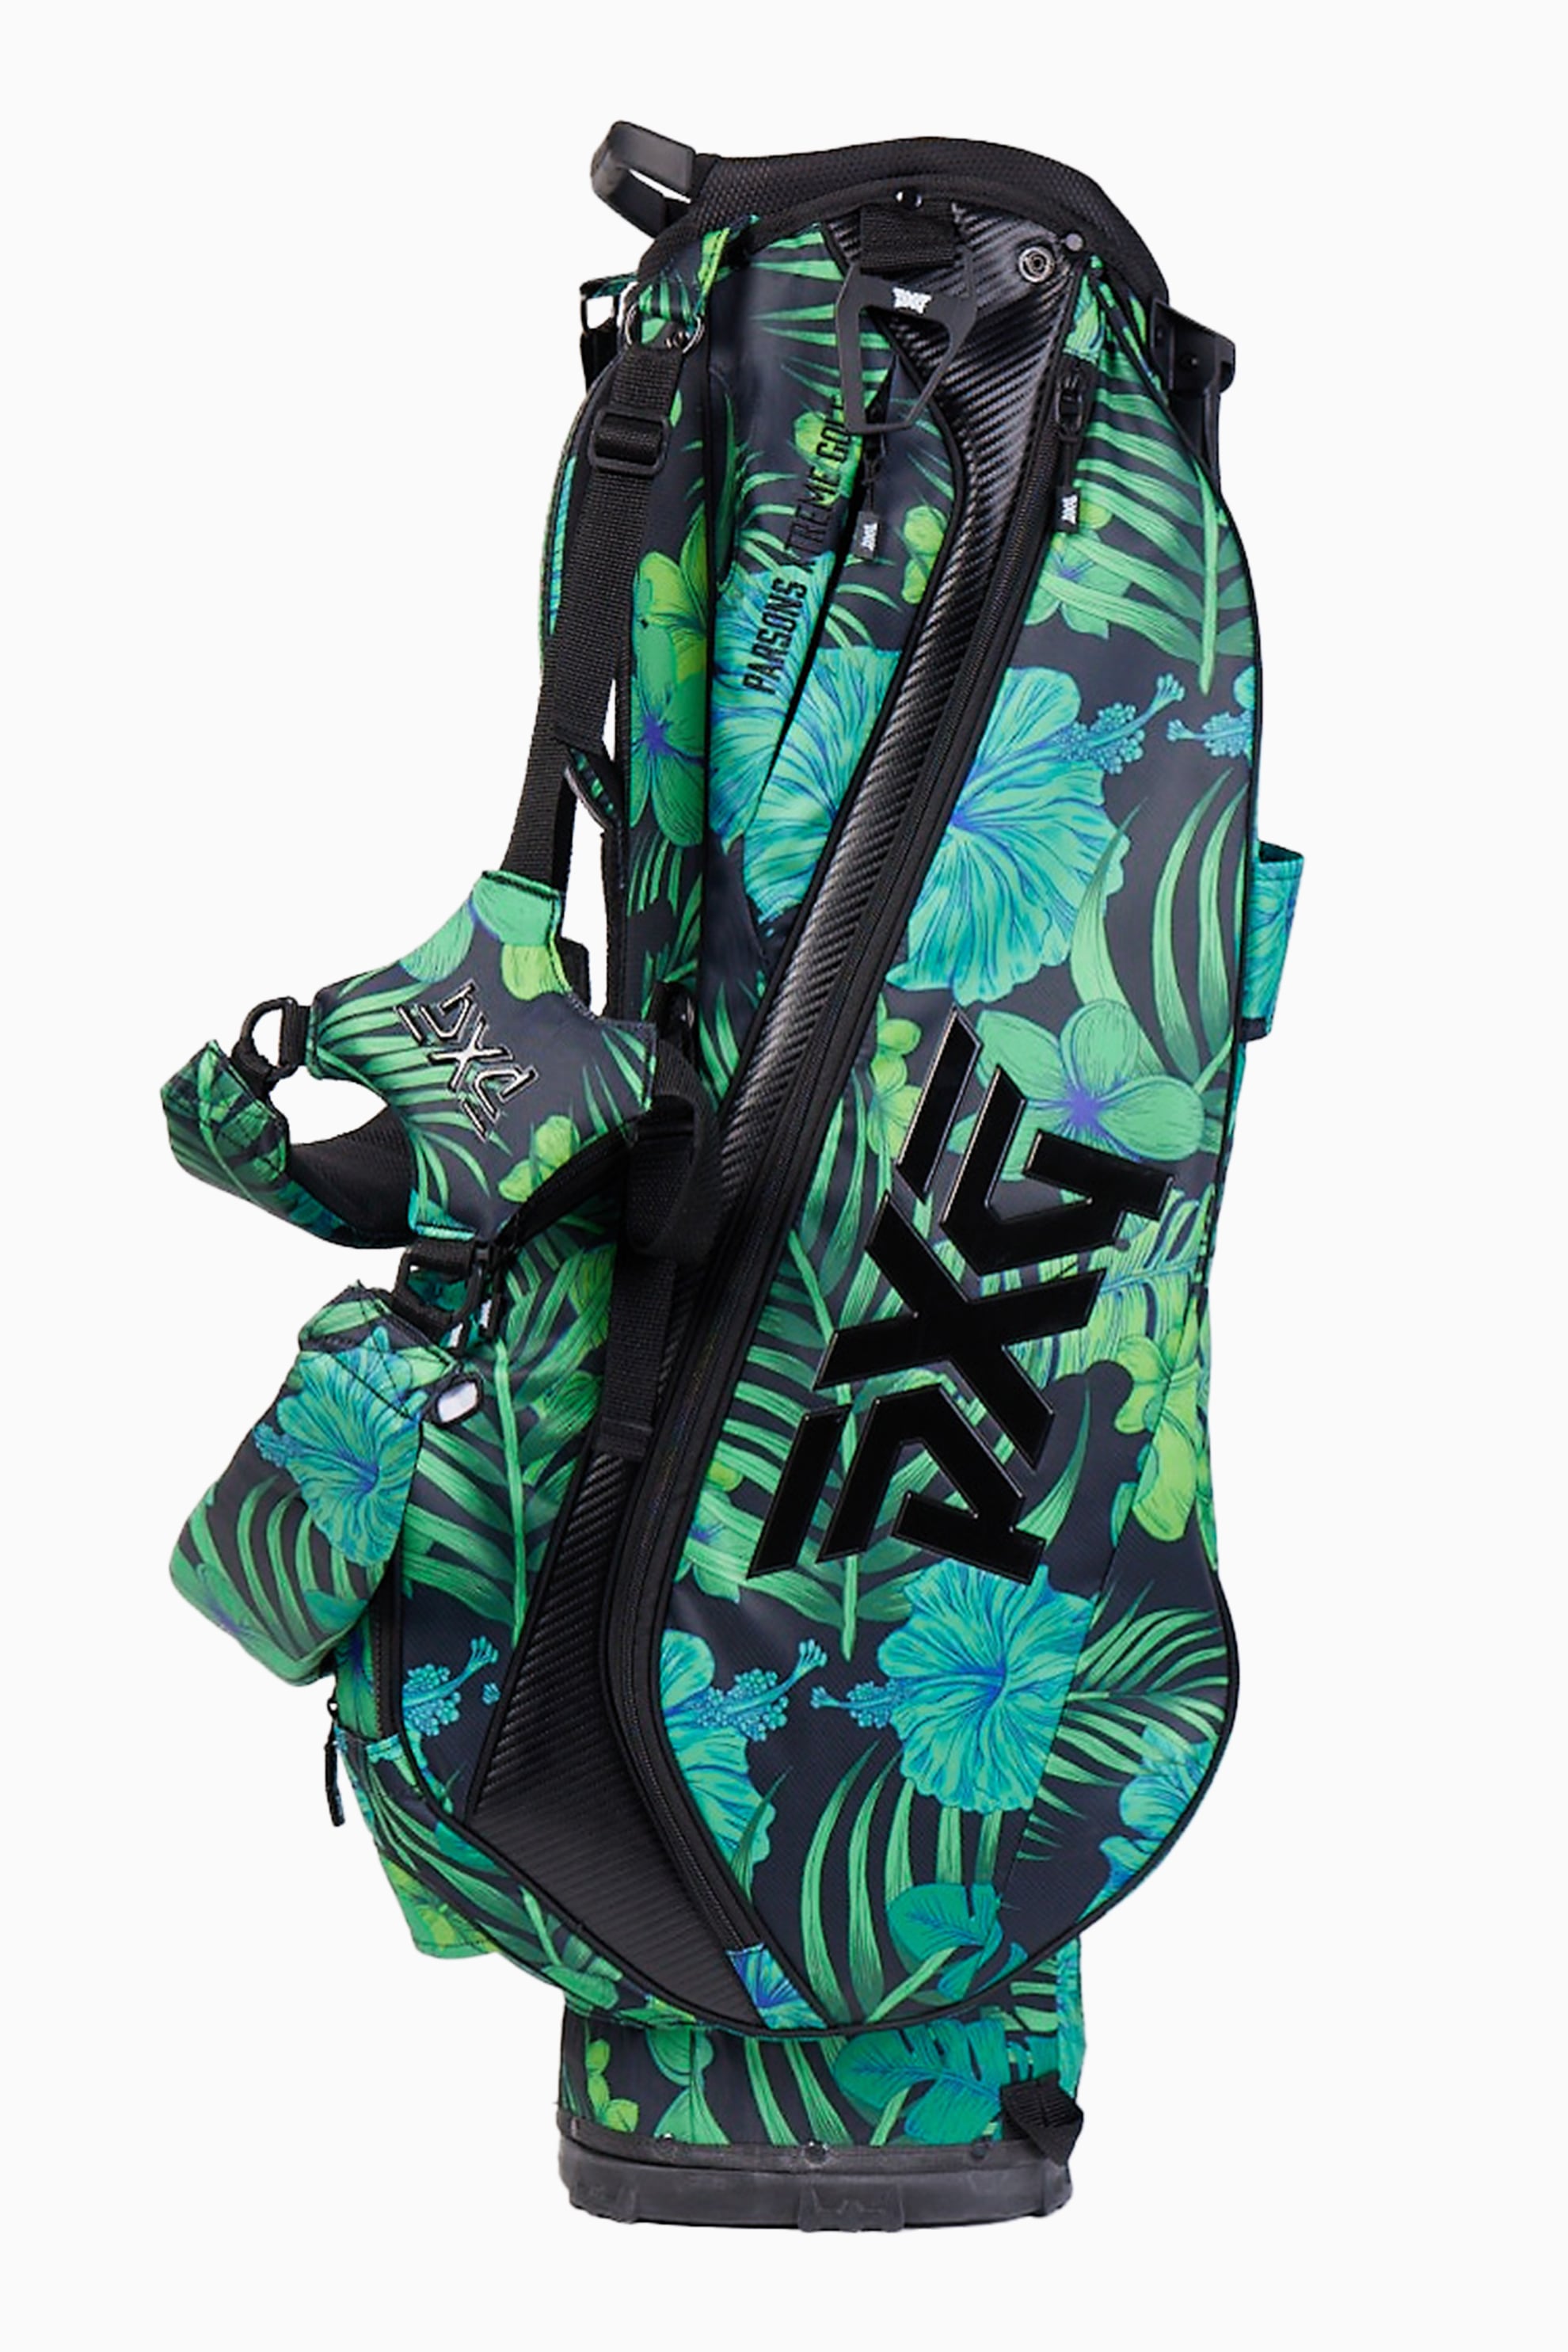 Buy Aloha 23 Lightweight Carry Stand Bag | PXG